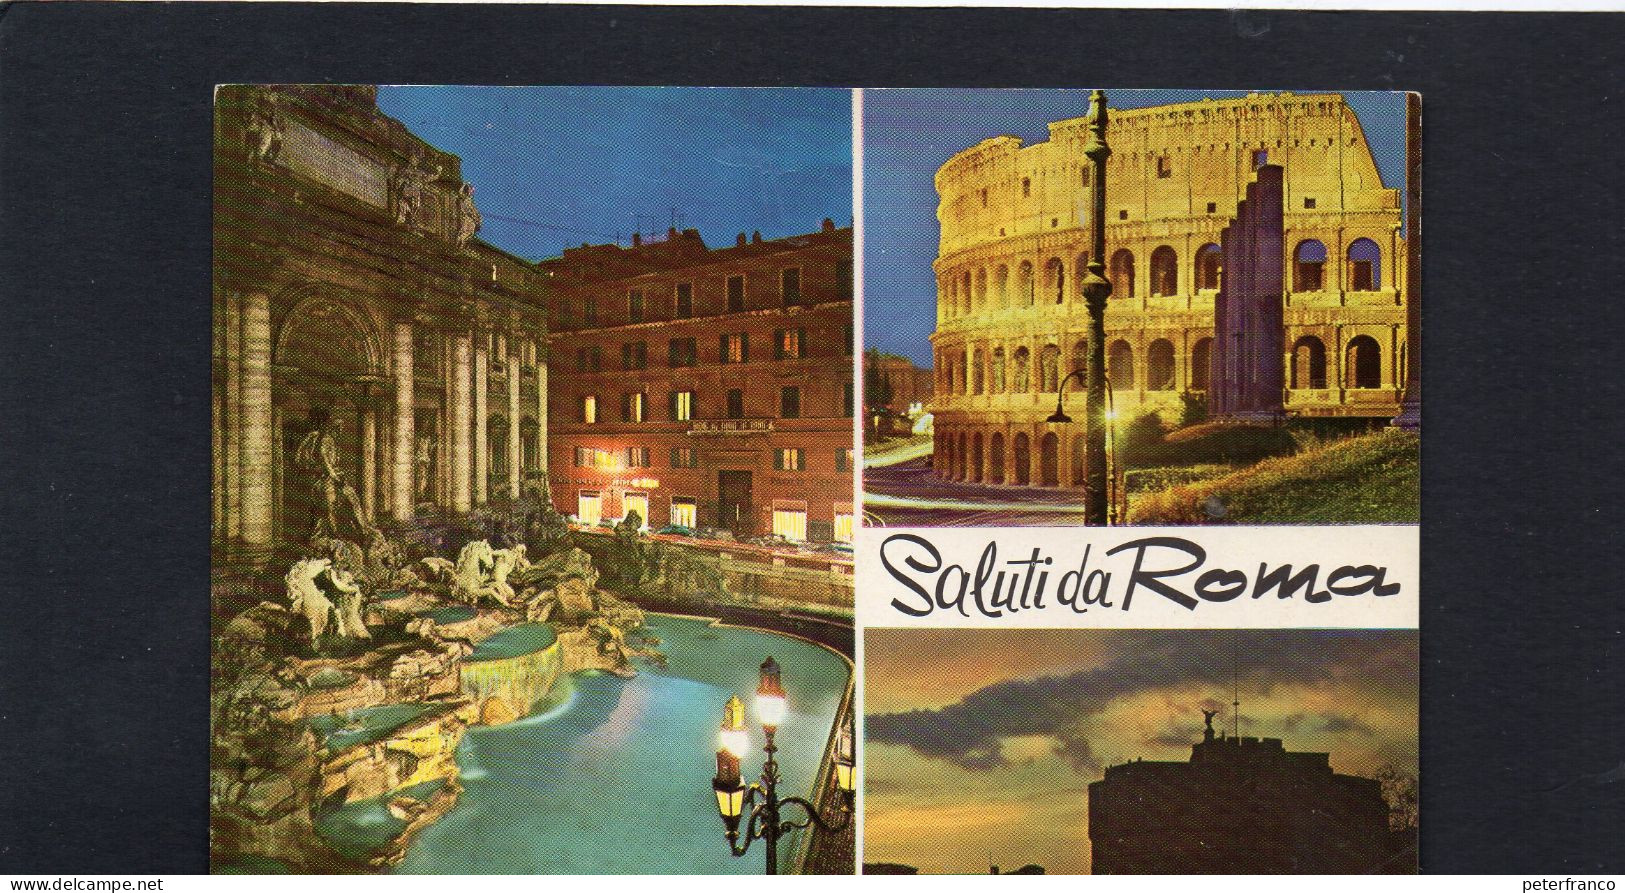 Italia - Roma - Vedute - Andere Monumente & Gebäude